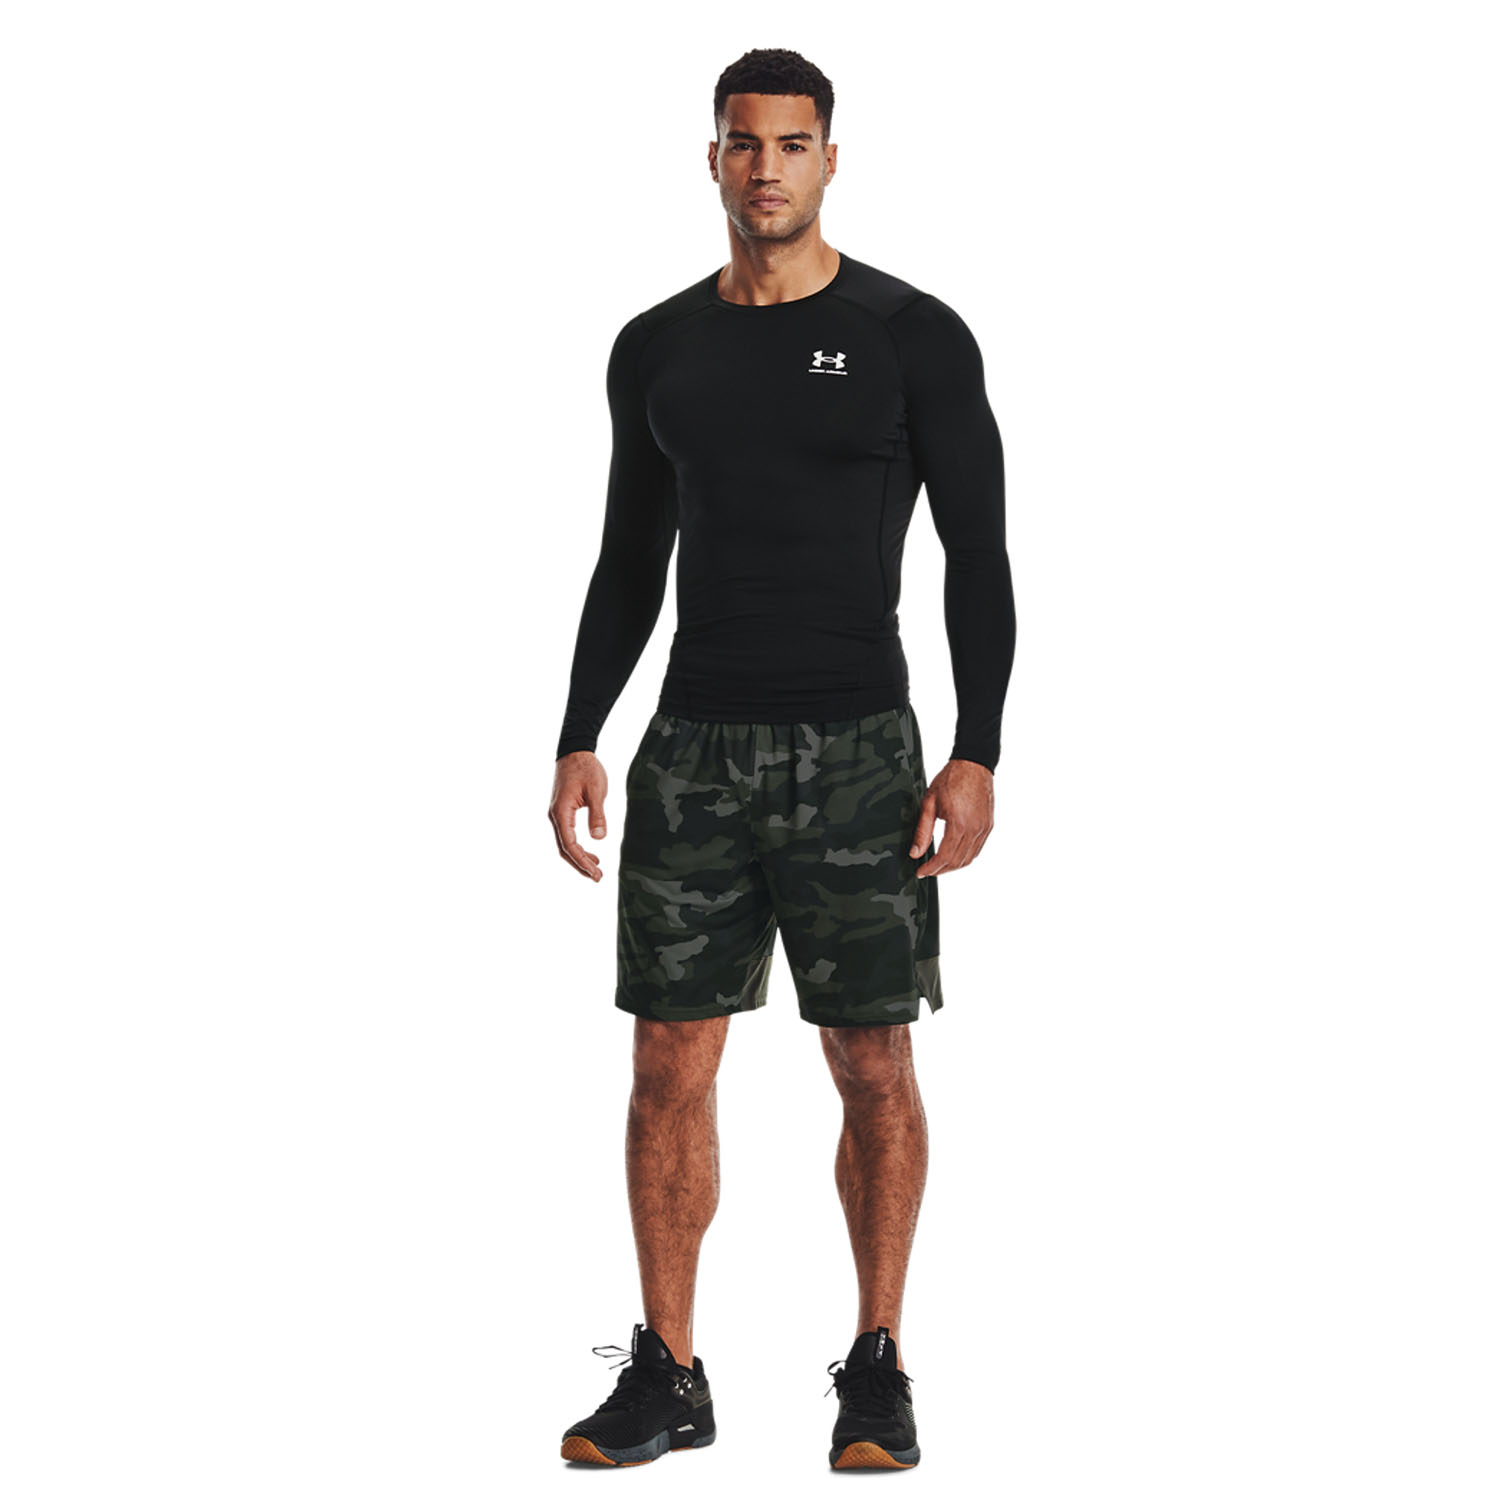 Armour HeatGear Compression Camisa de Tenis Hombre Black